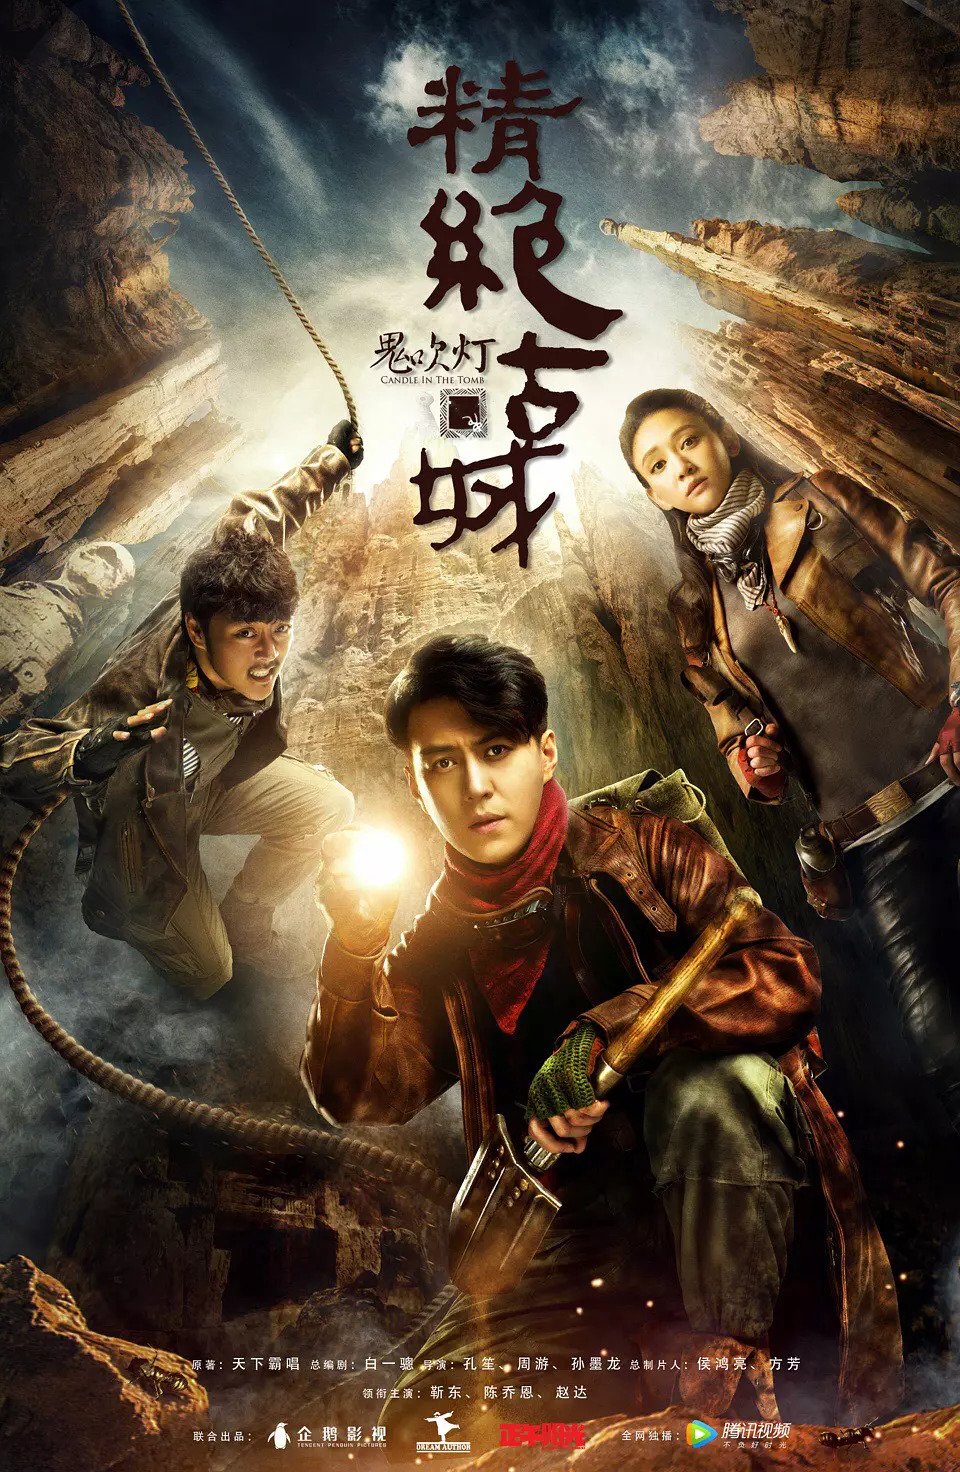 ดูหนังออนไลน์ฟรี Candle in the Tomb the Ancient City of Jingjue (2016) คนขุดสุสาน เมืองโบราณกลางทะเล EP.1-21 (จบ) หนังเต็มเรื่อง หนังมาสเตอร์ ดูหนังHD ดูหนังออนไลน์ ดูหนังใหม่